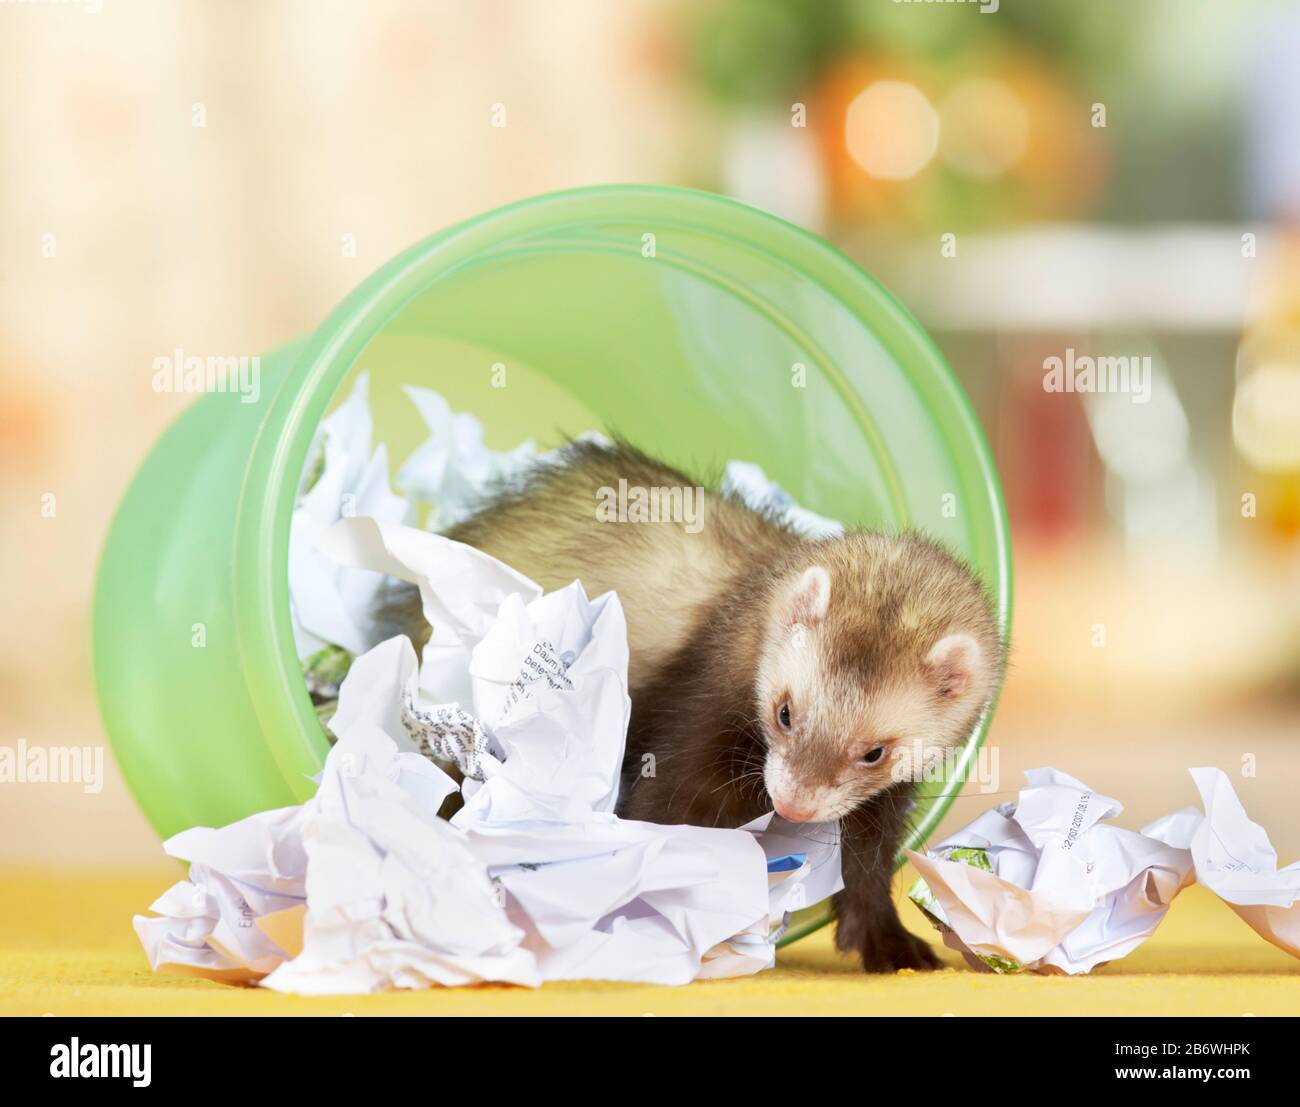 Ferret (Mustela putorius furo) faisant des absurdités, vide le bac à papier de déchets. Allemagne . Banque D'Images